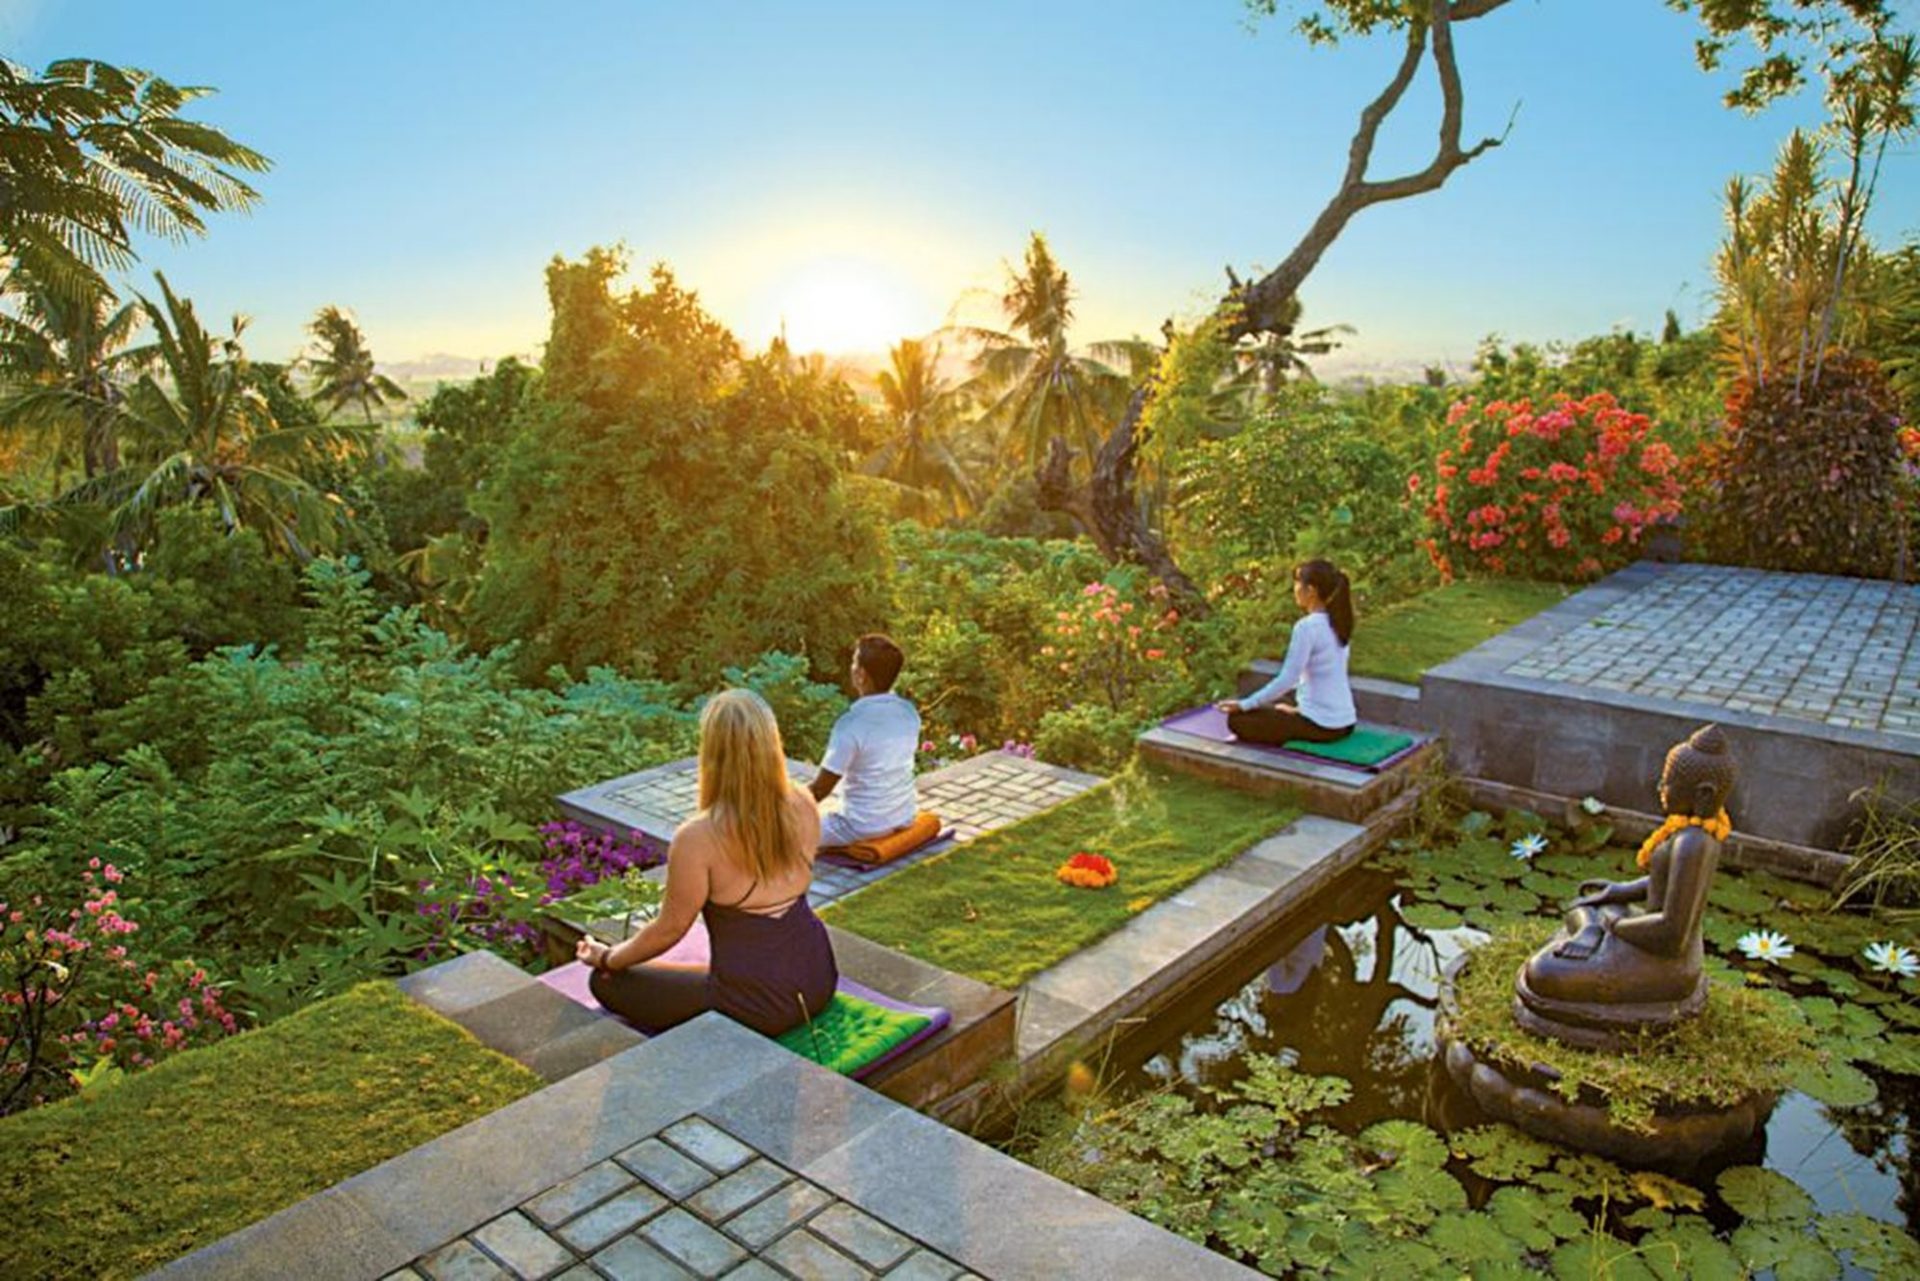 Zen Resort Bali - Retreat for Body, Mind & Soul